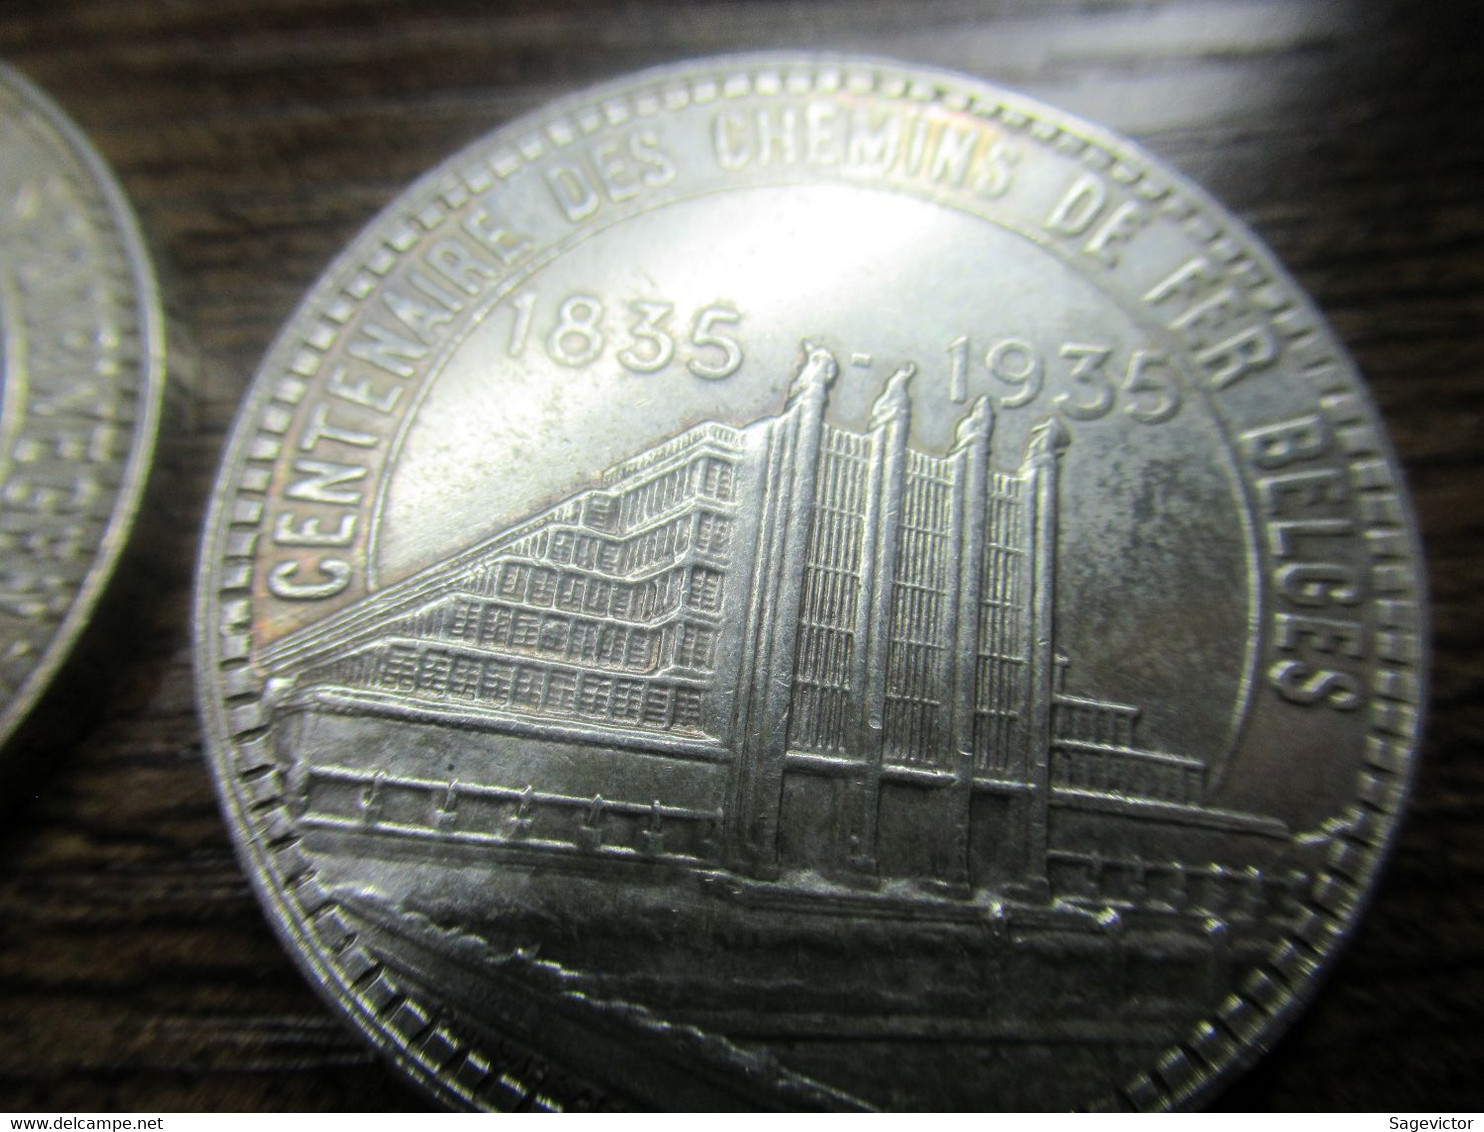 50 francs belgique  1935  4 pièces avec trait fracture du coin.